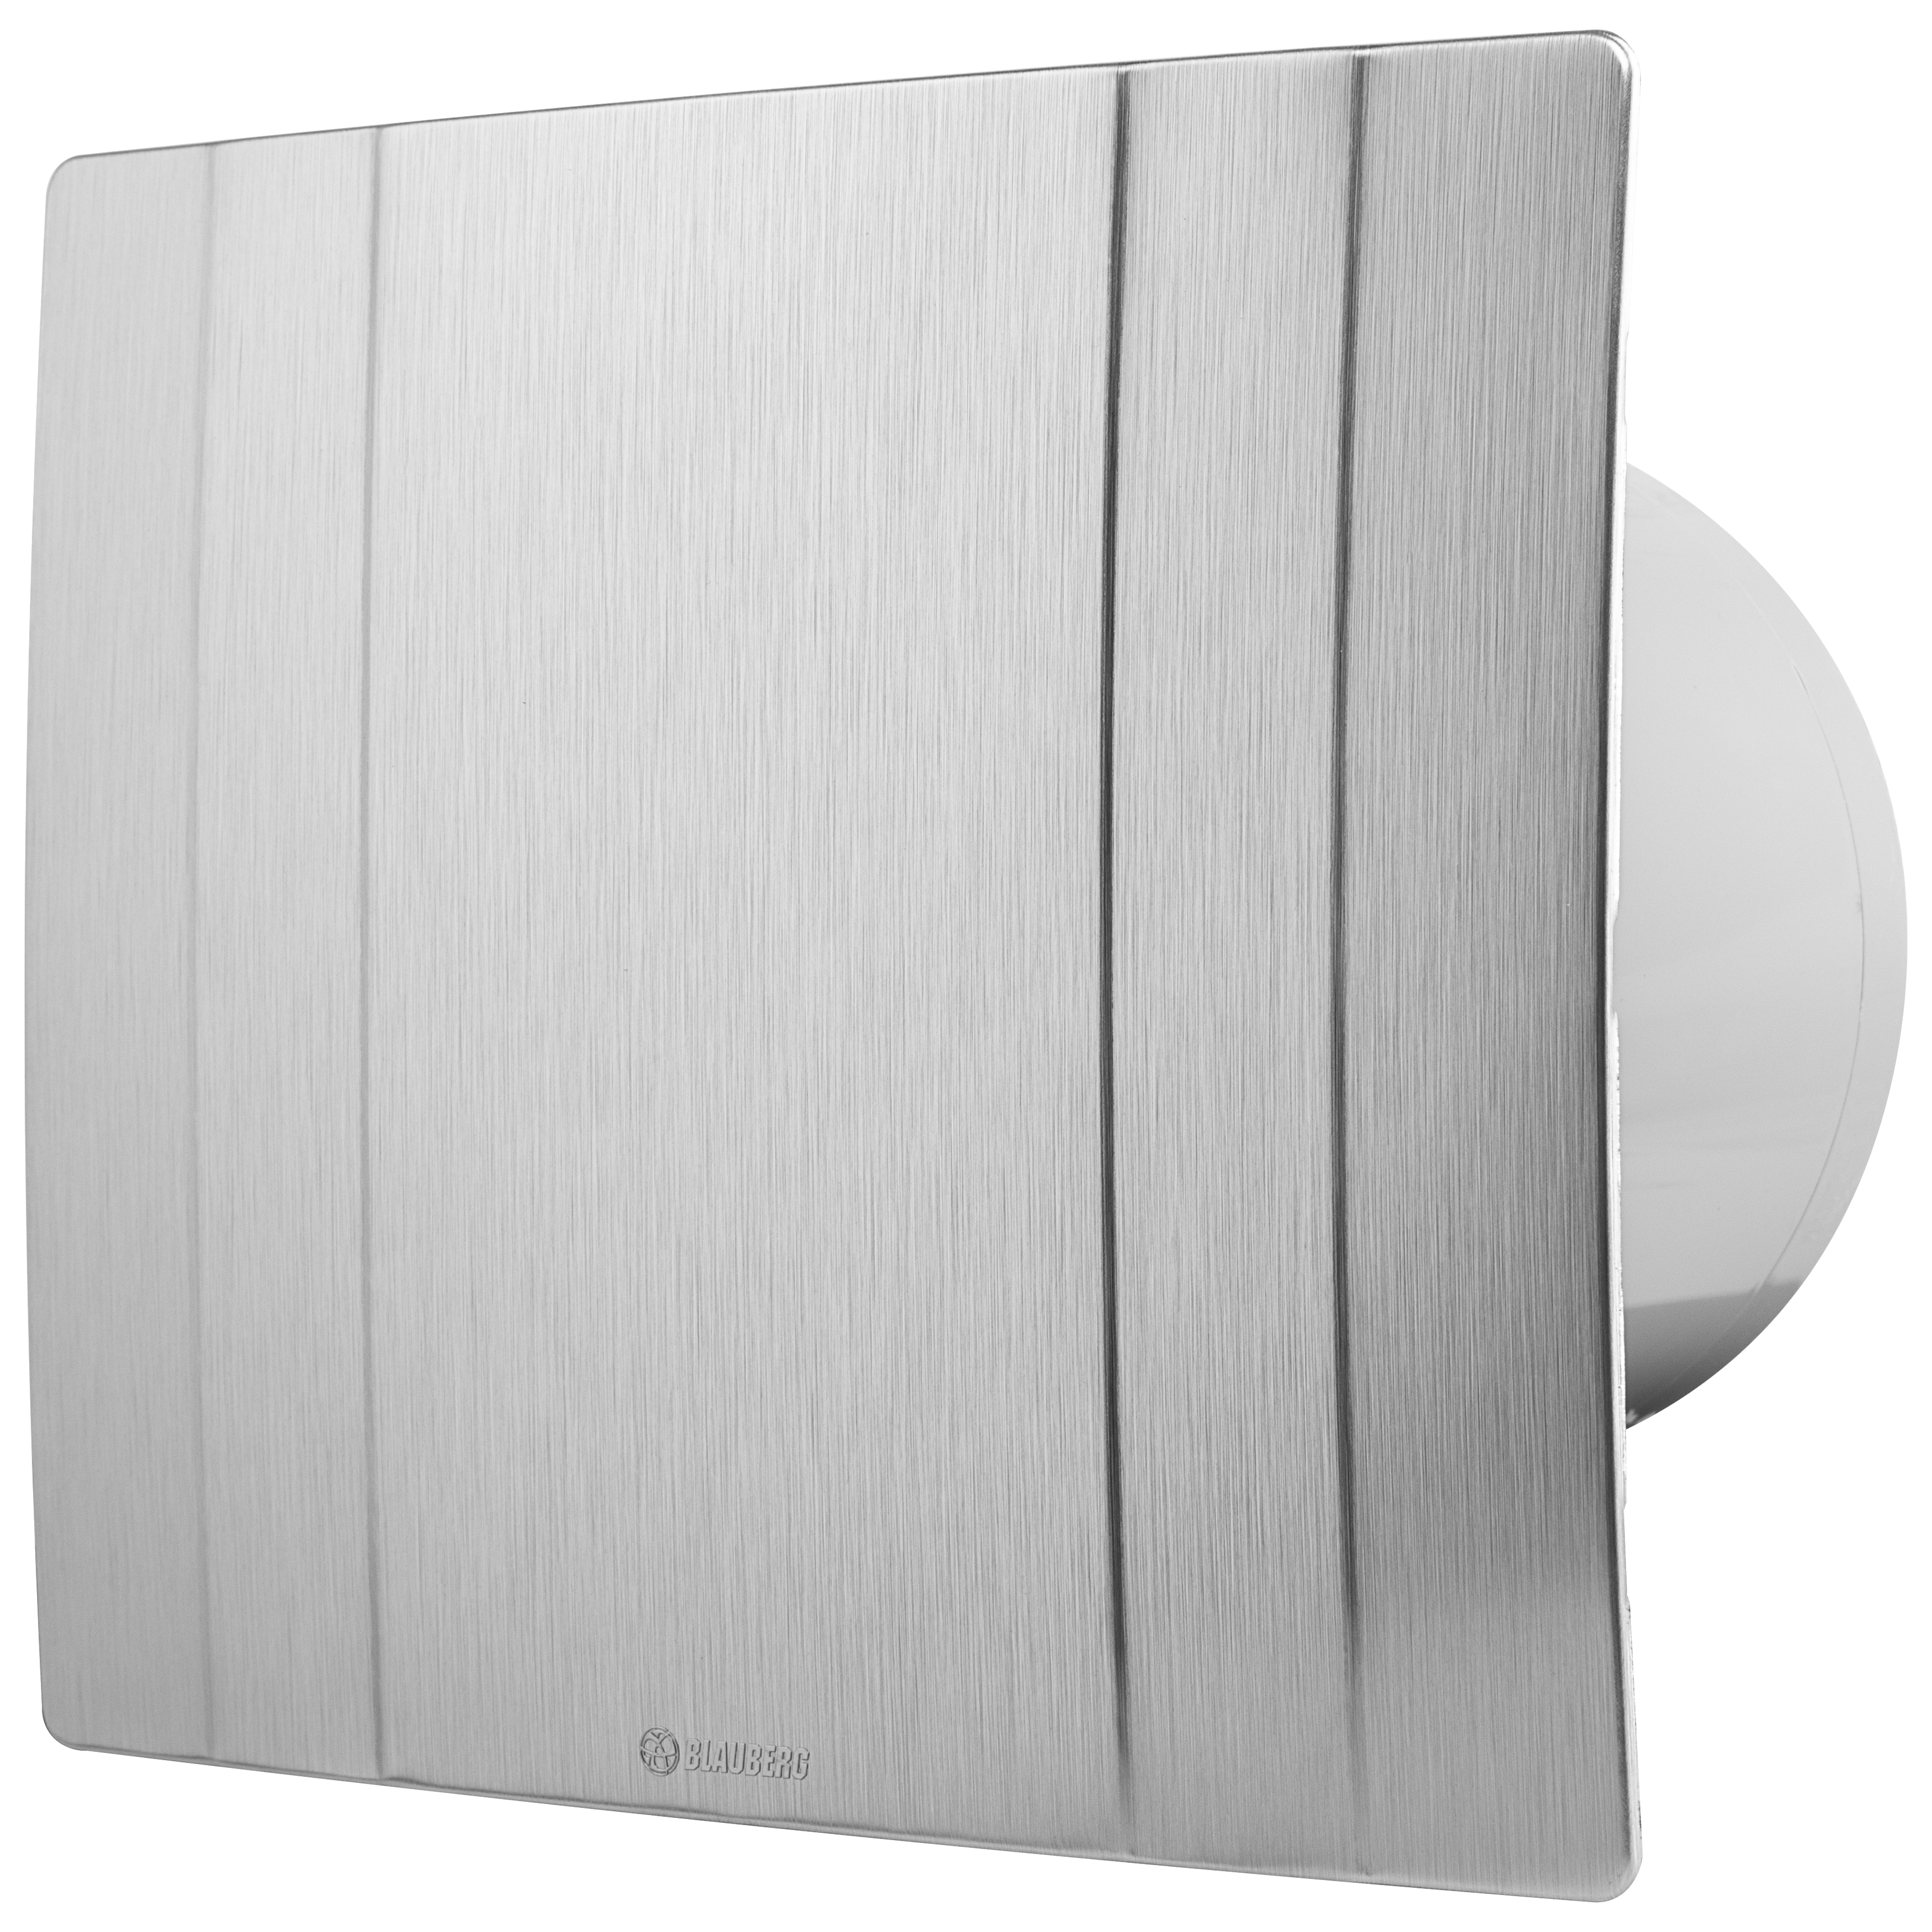 Серый вытяжной вентилятор Blauberg Quatro Hi-Tech 150